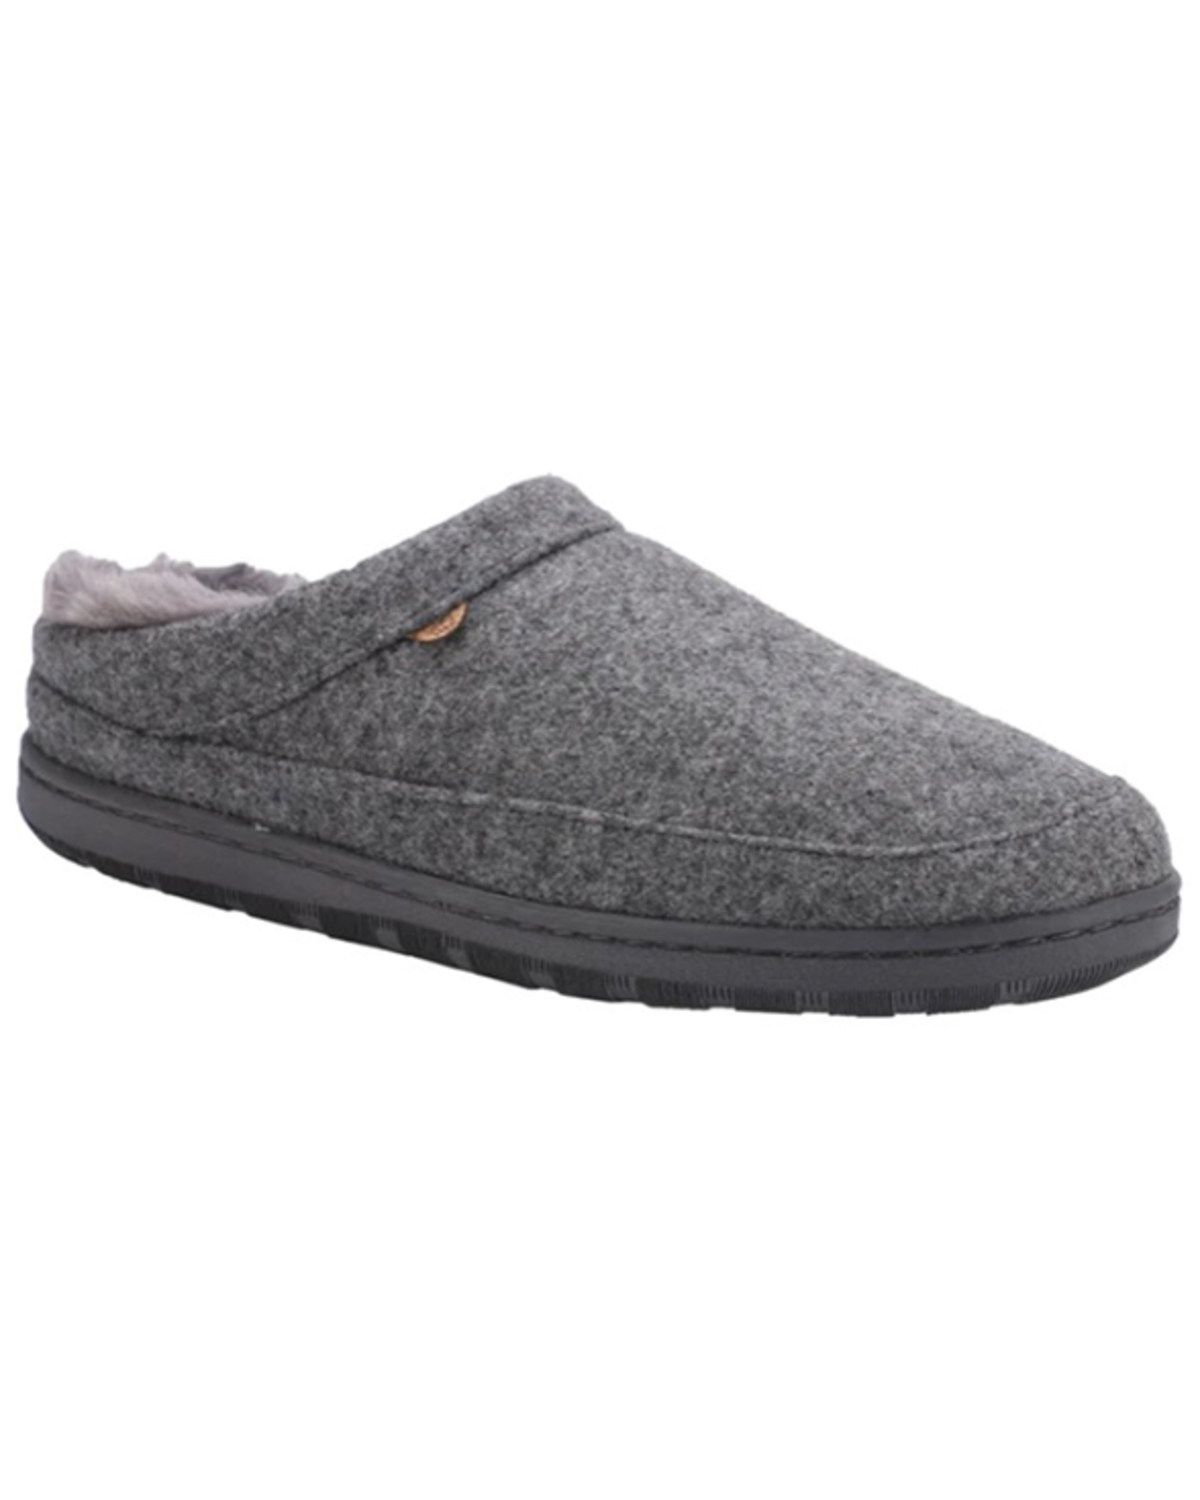 Lamo Footwear Men's Julian Clog Wool Slippers